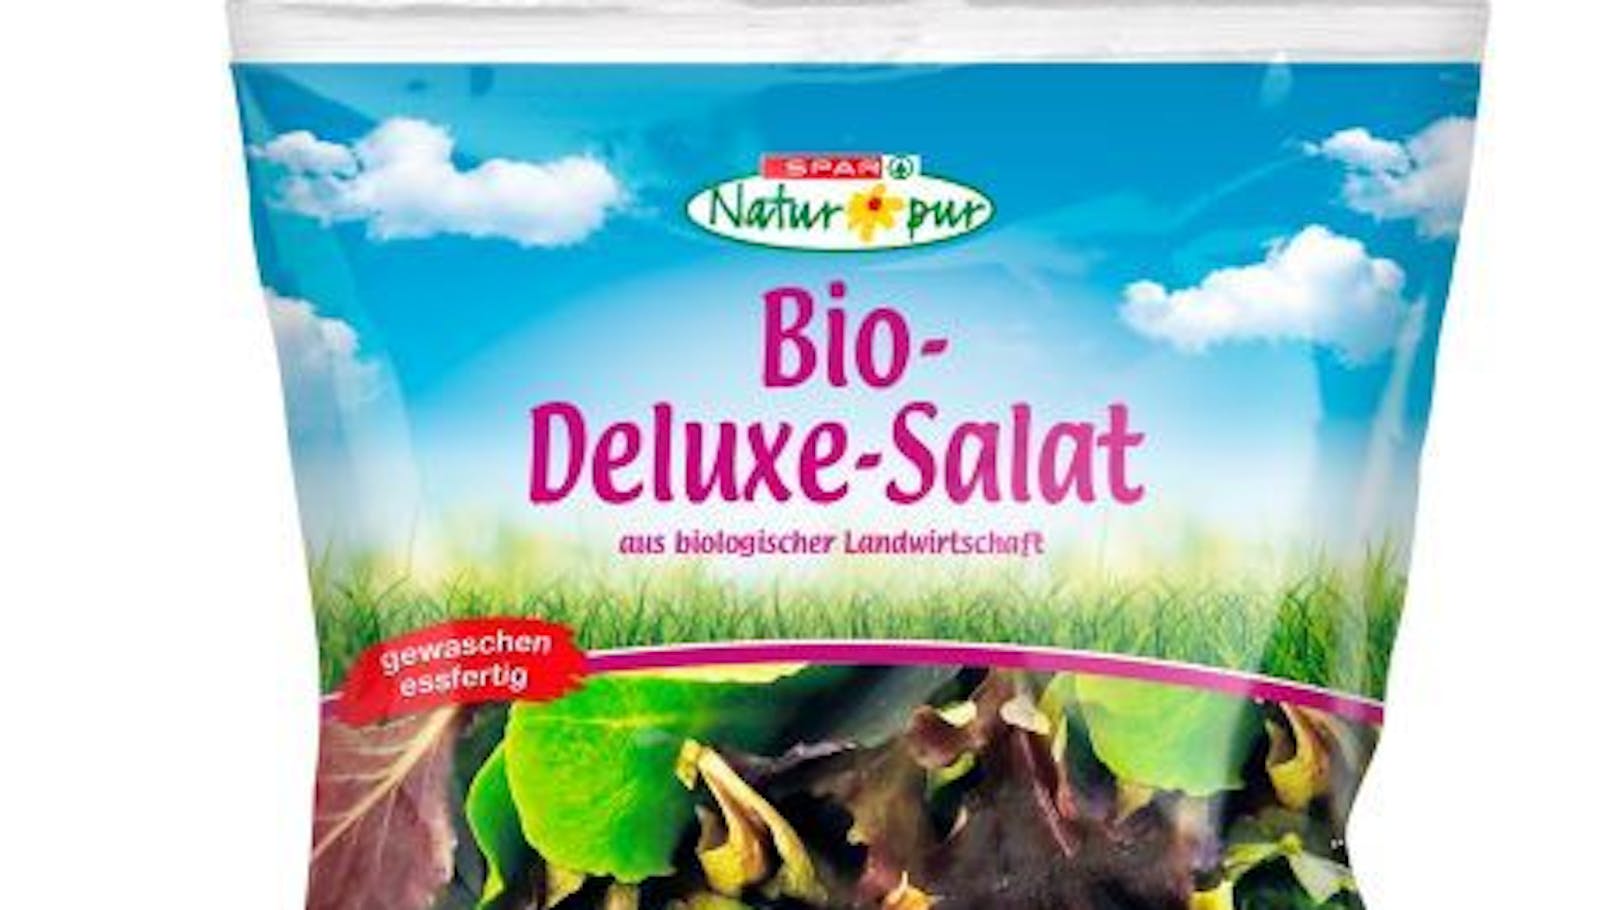 <strong>Spar Natur pur Bio-Deluxe-Salat:</strong> für den menschlichen Verzehr nicht geeignet (B.Cereus über dem Warnwert, Hefen und Schimmelpilze über dem Richtwert)